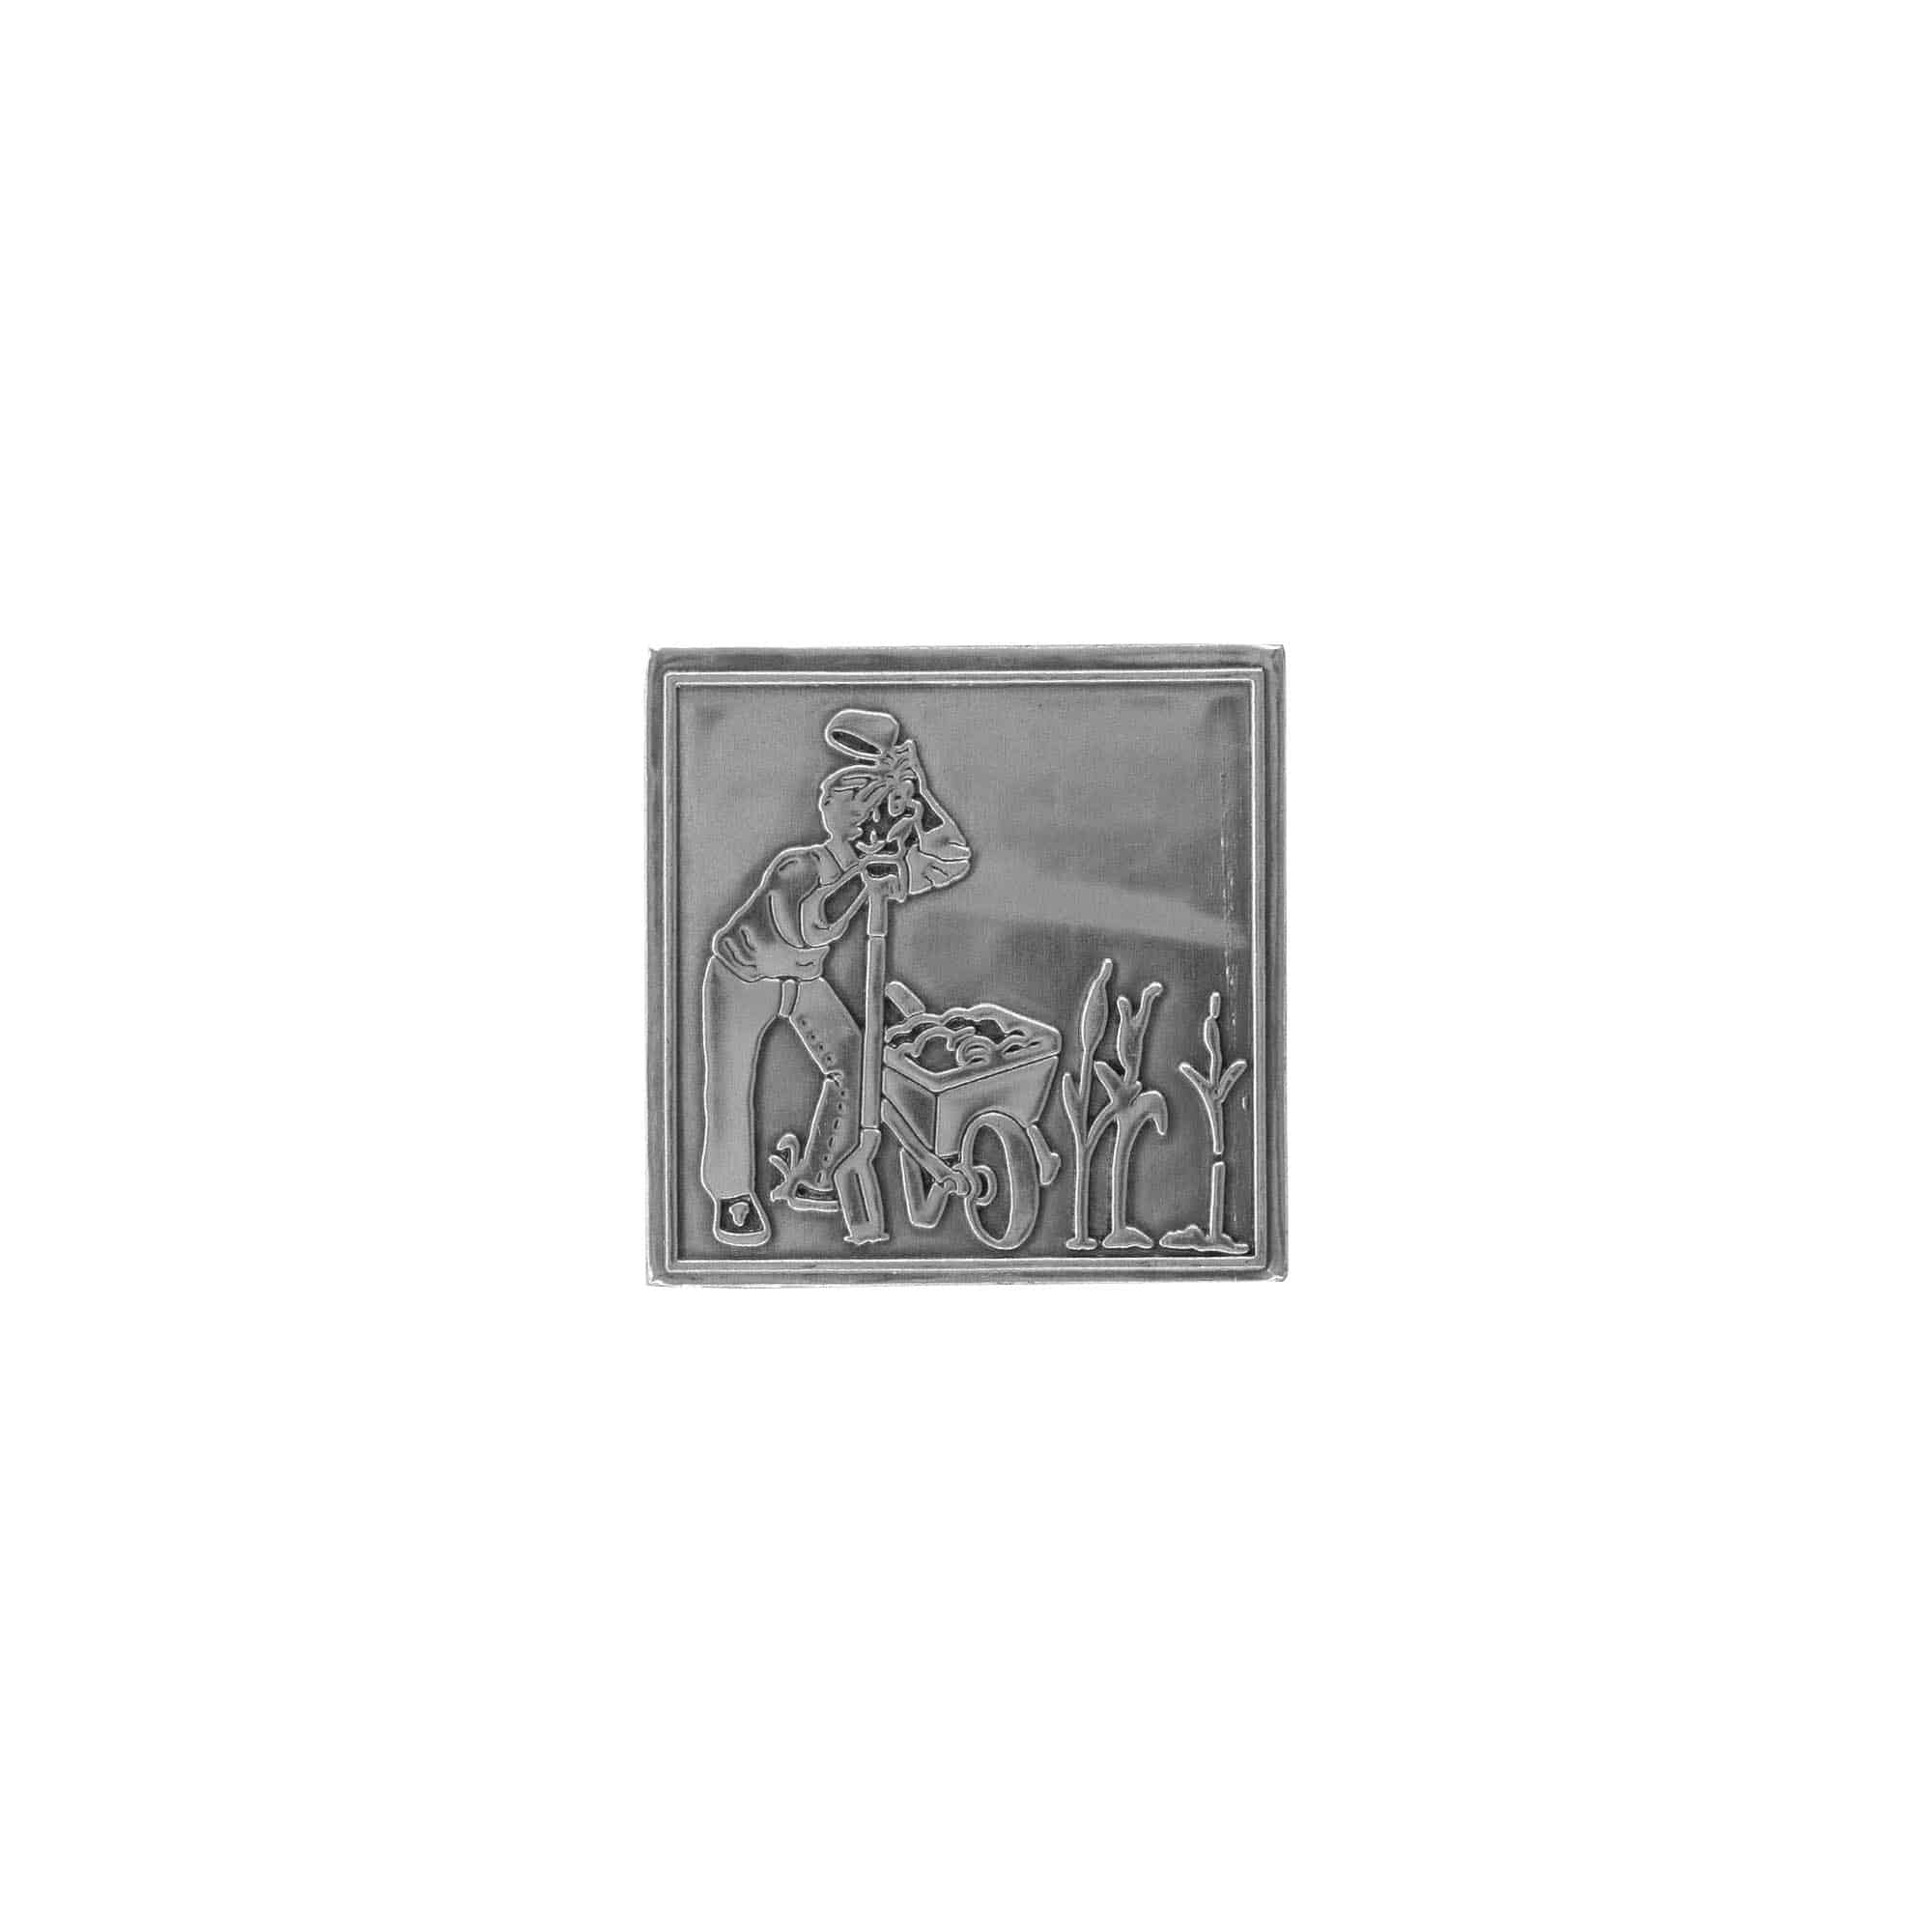 Etykieta cynowa 'Ogrodnik', kwadratowa, metal, kolor srebrny